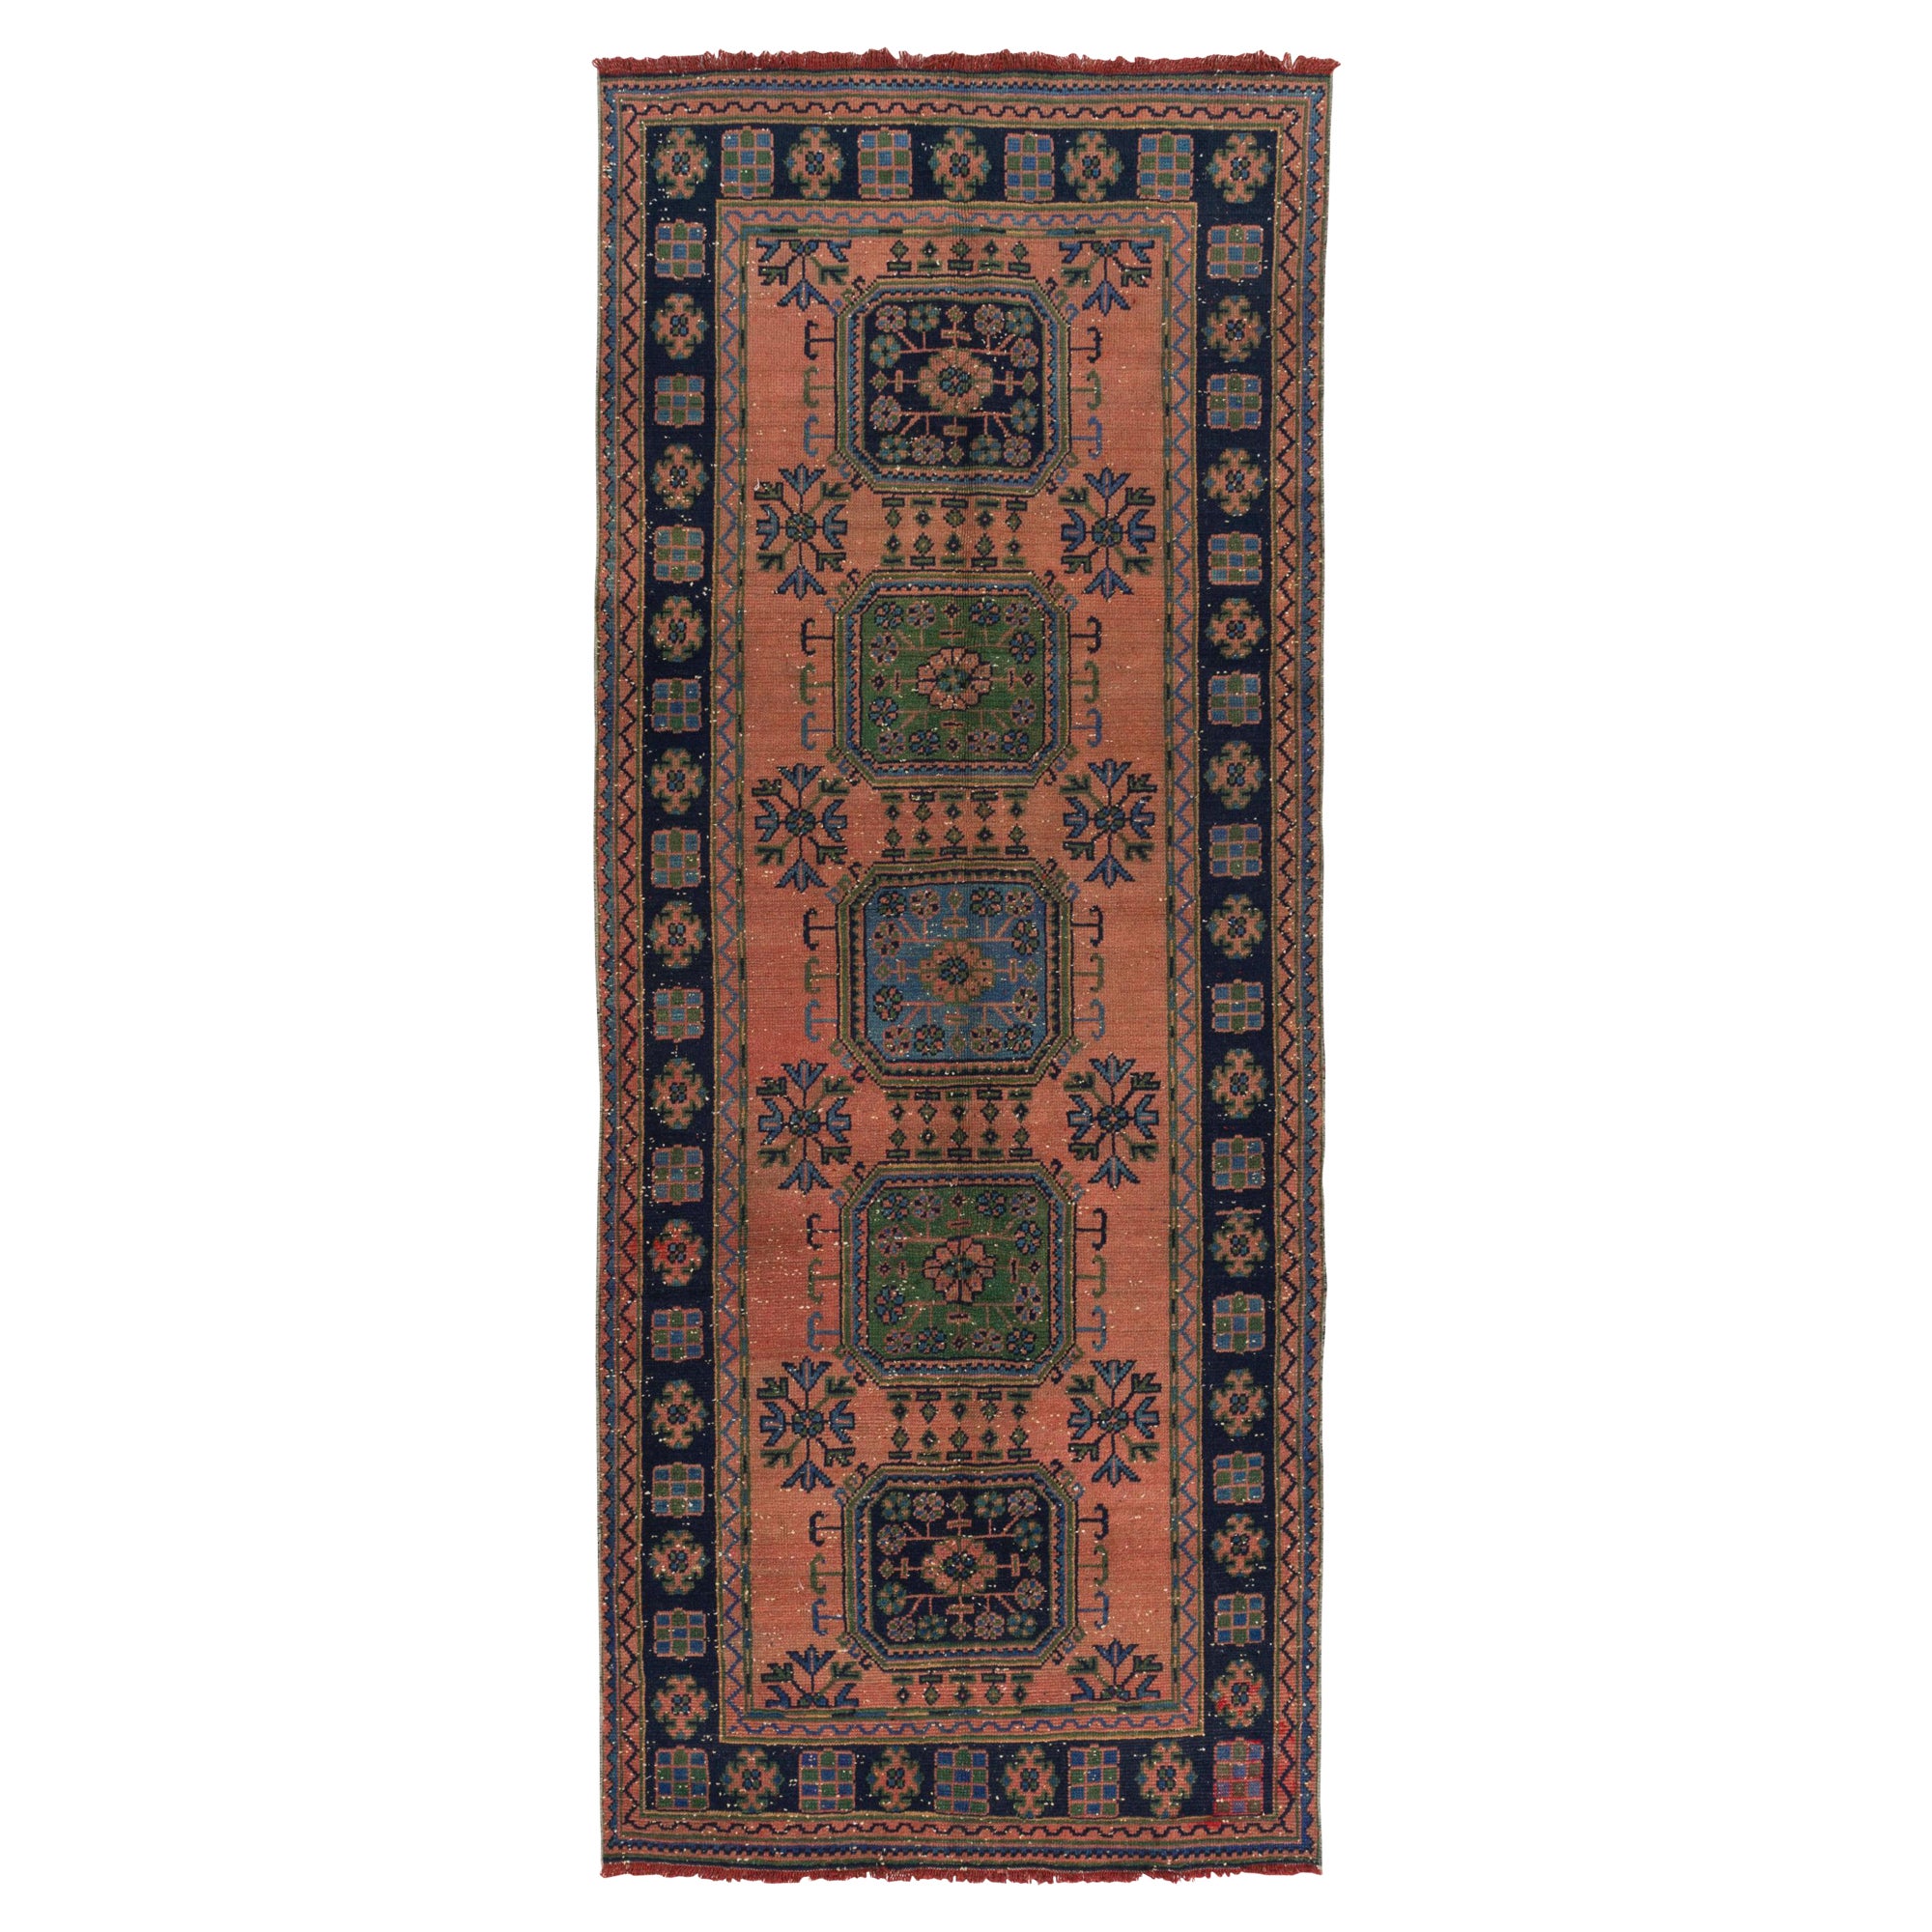 4.7x11 Ft Vintage Turkish Runner Rug, One of a kind Handmade Hallway Carpet For Sale